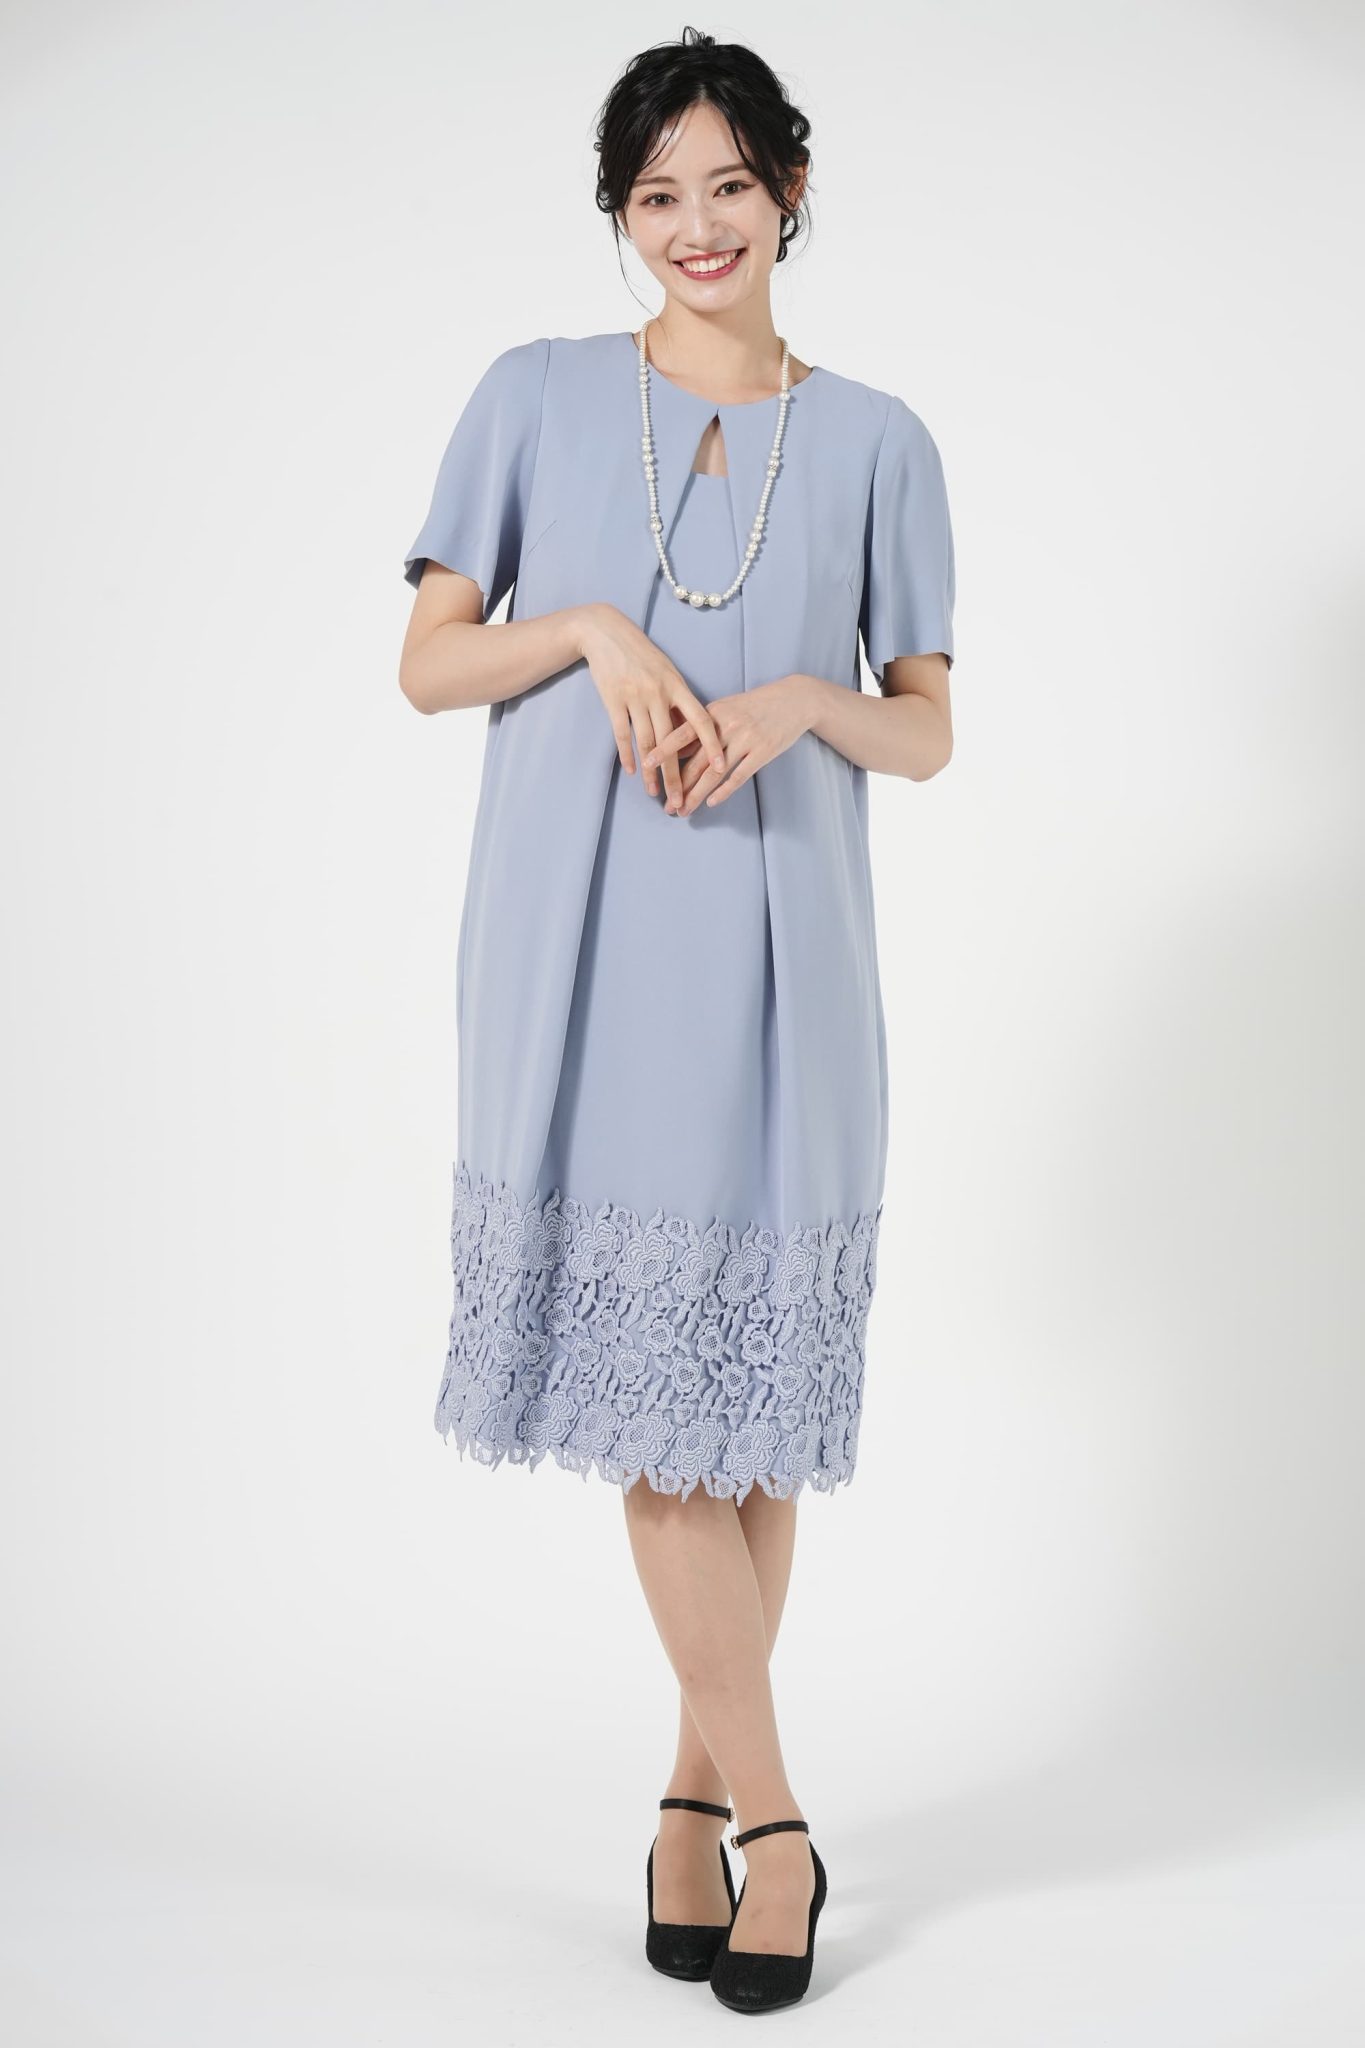 setaichiro デザインカットコクーン型ブルードレス